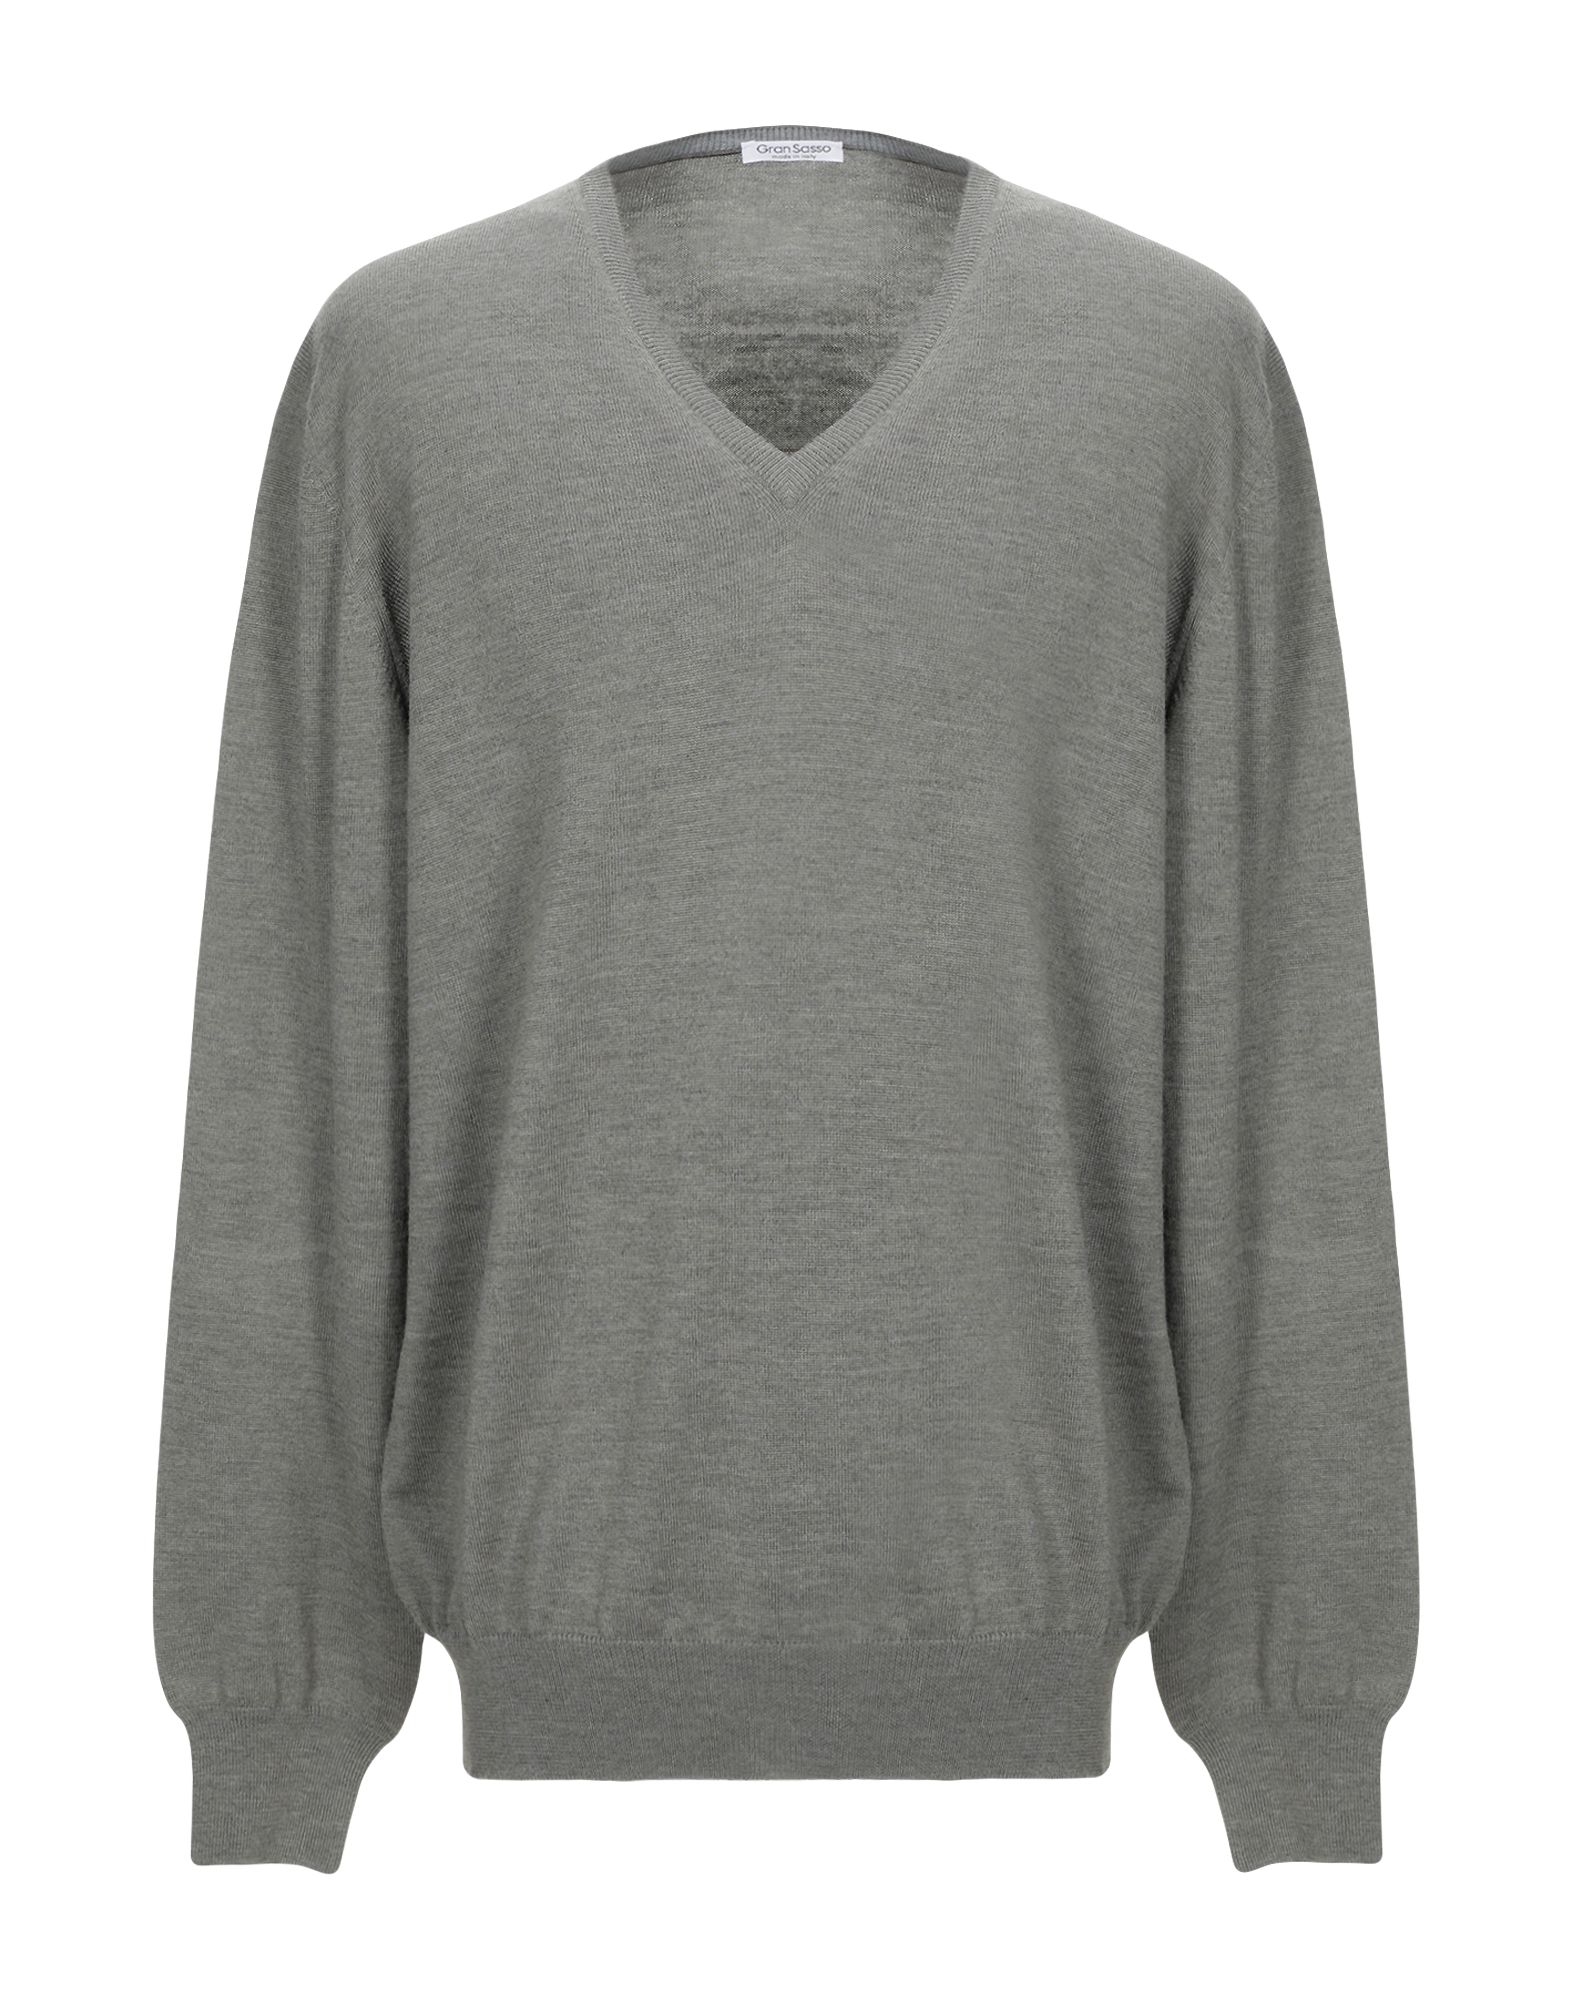 GRAN SASSO Sweater,39950514IU 9